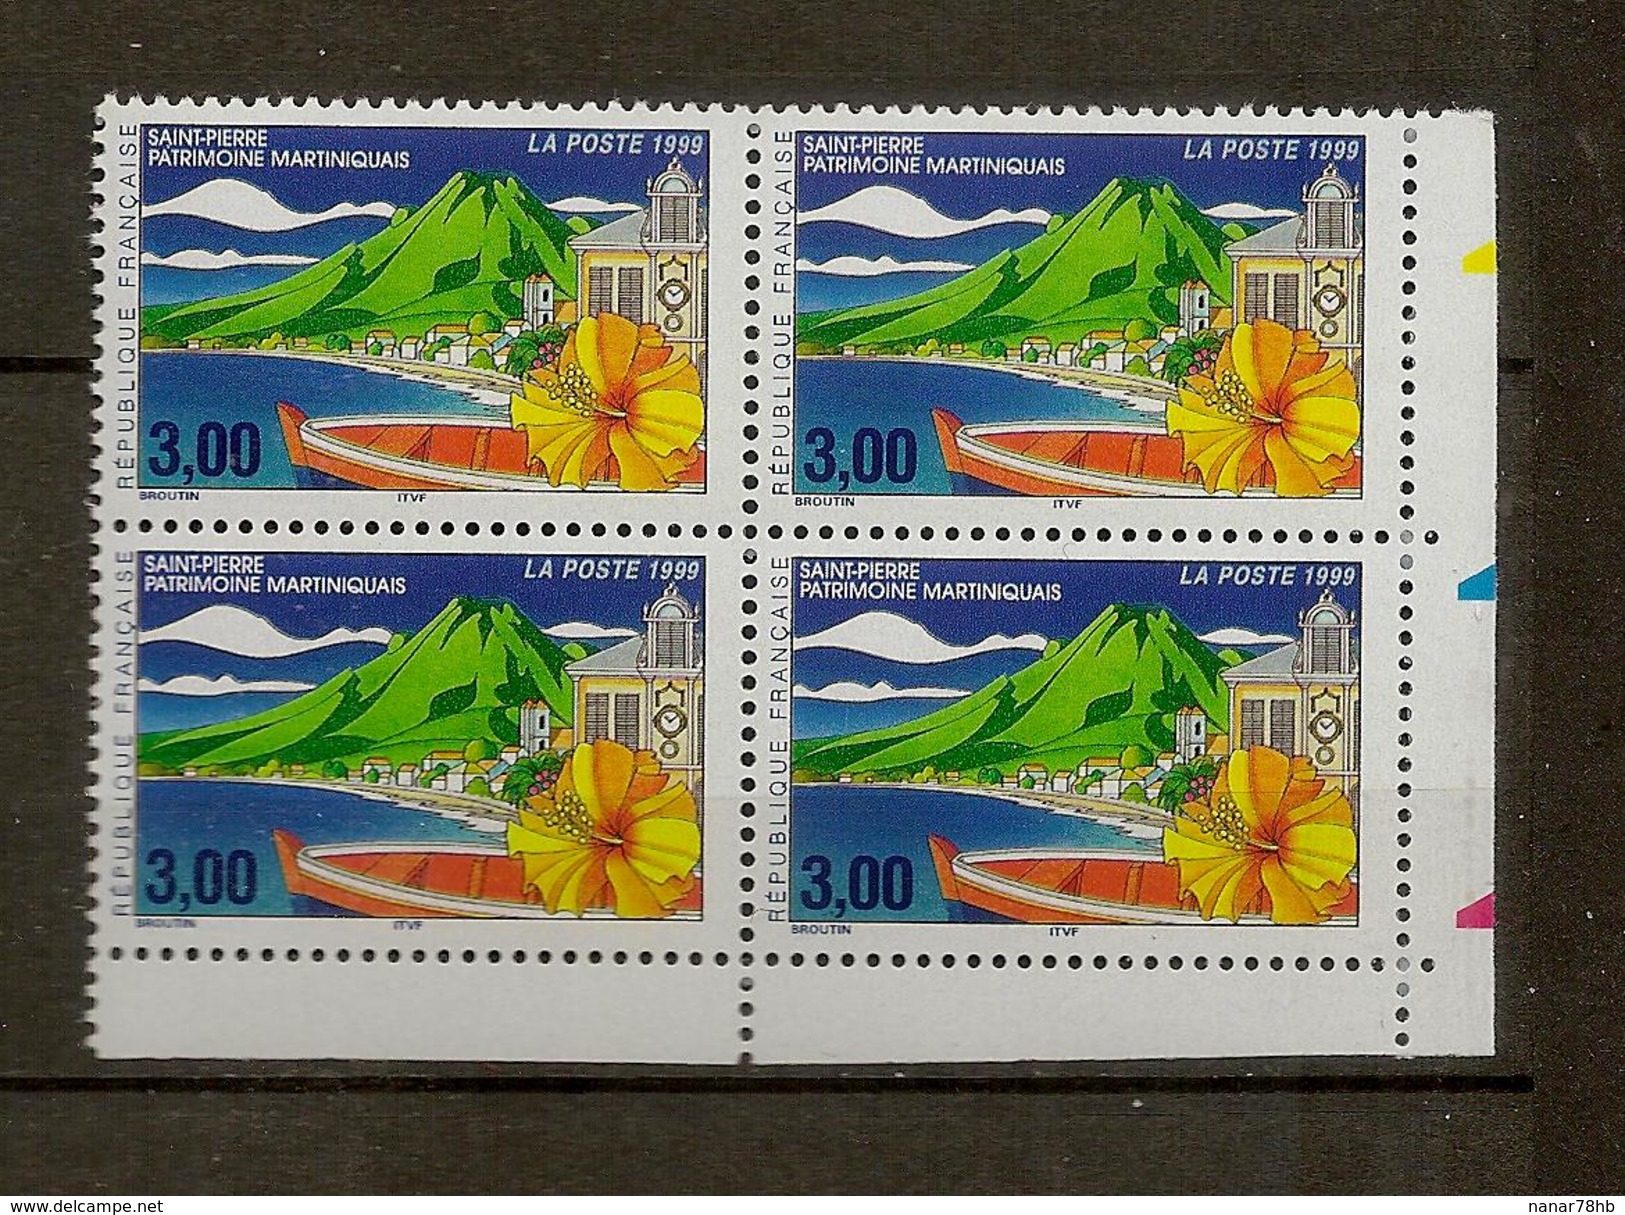 Bloc De 4 Timbres N°3244 St Pierre Martinique (bord De Feuille Coupé Aux Ciseaux) - Unused Stamps